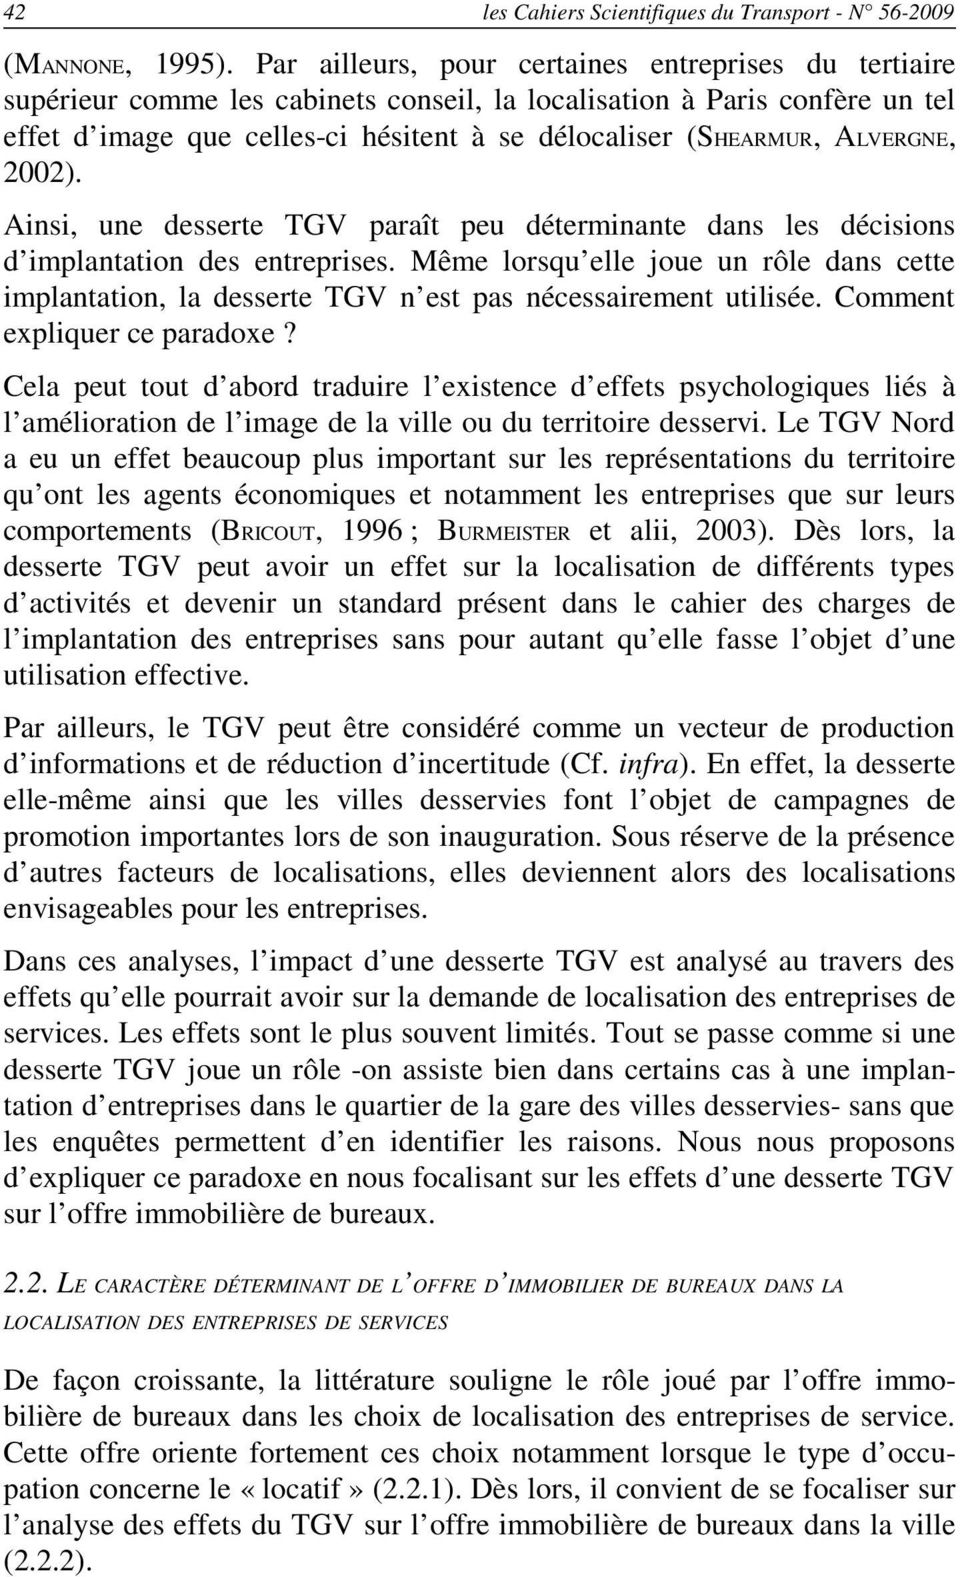 ALVERGNE, 2002). Ainsi, une desserte TGV paraît peu déterminante dans les décisions d implantation des entreprises.